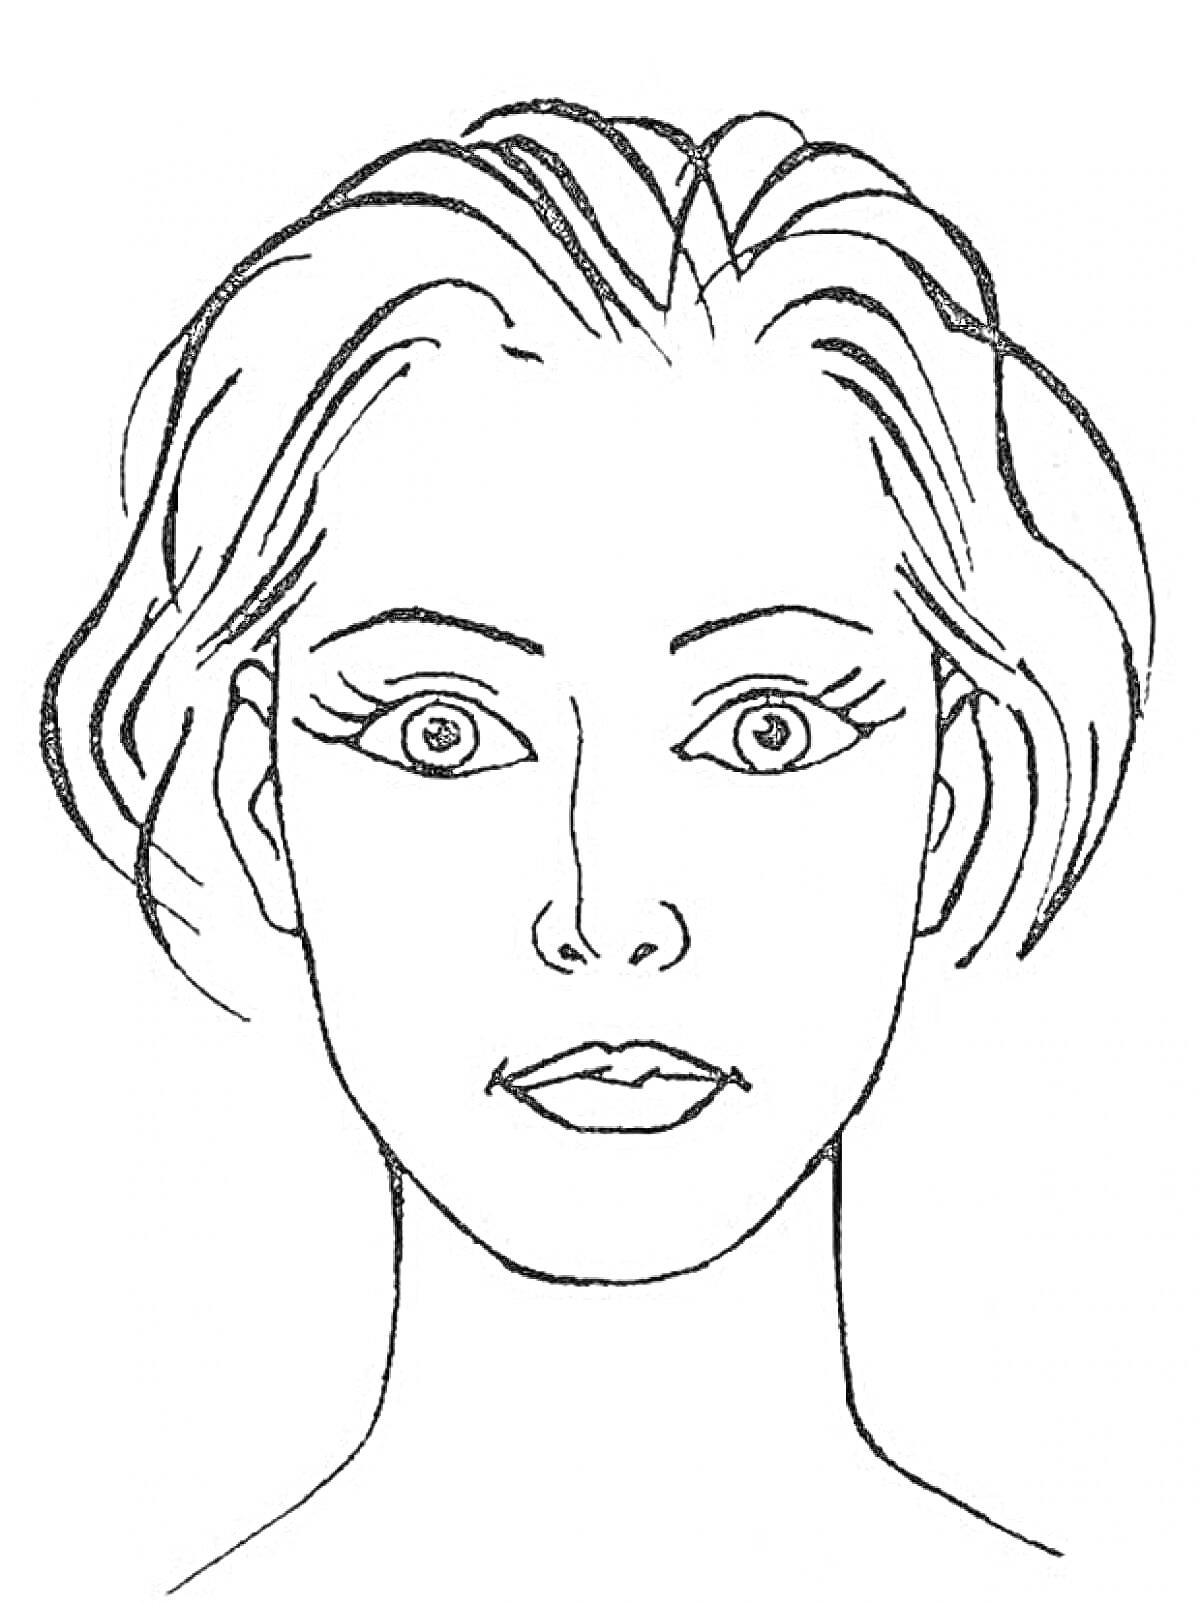 Раскраска лицо женщины с короткими волосами и выразительными глазами